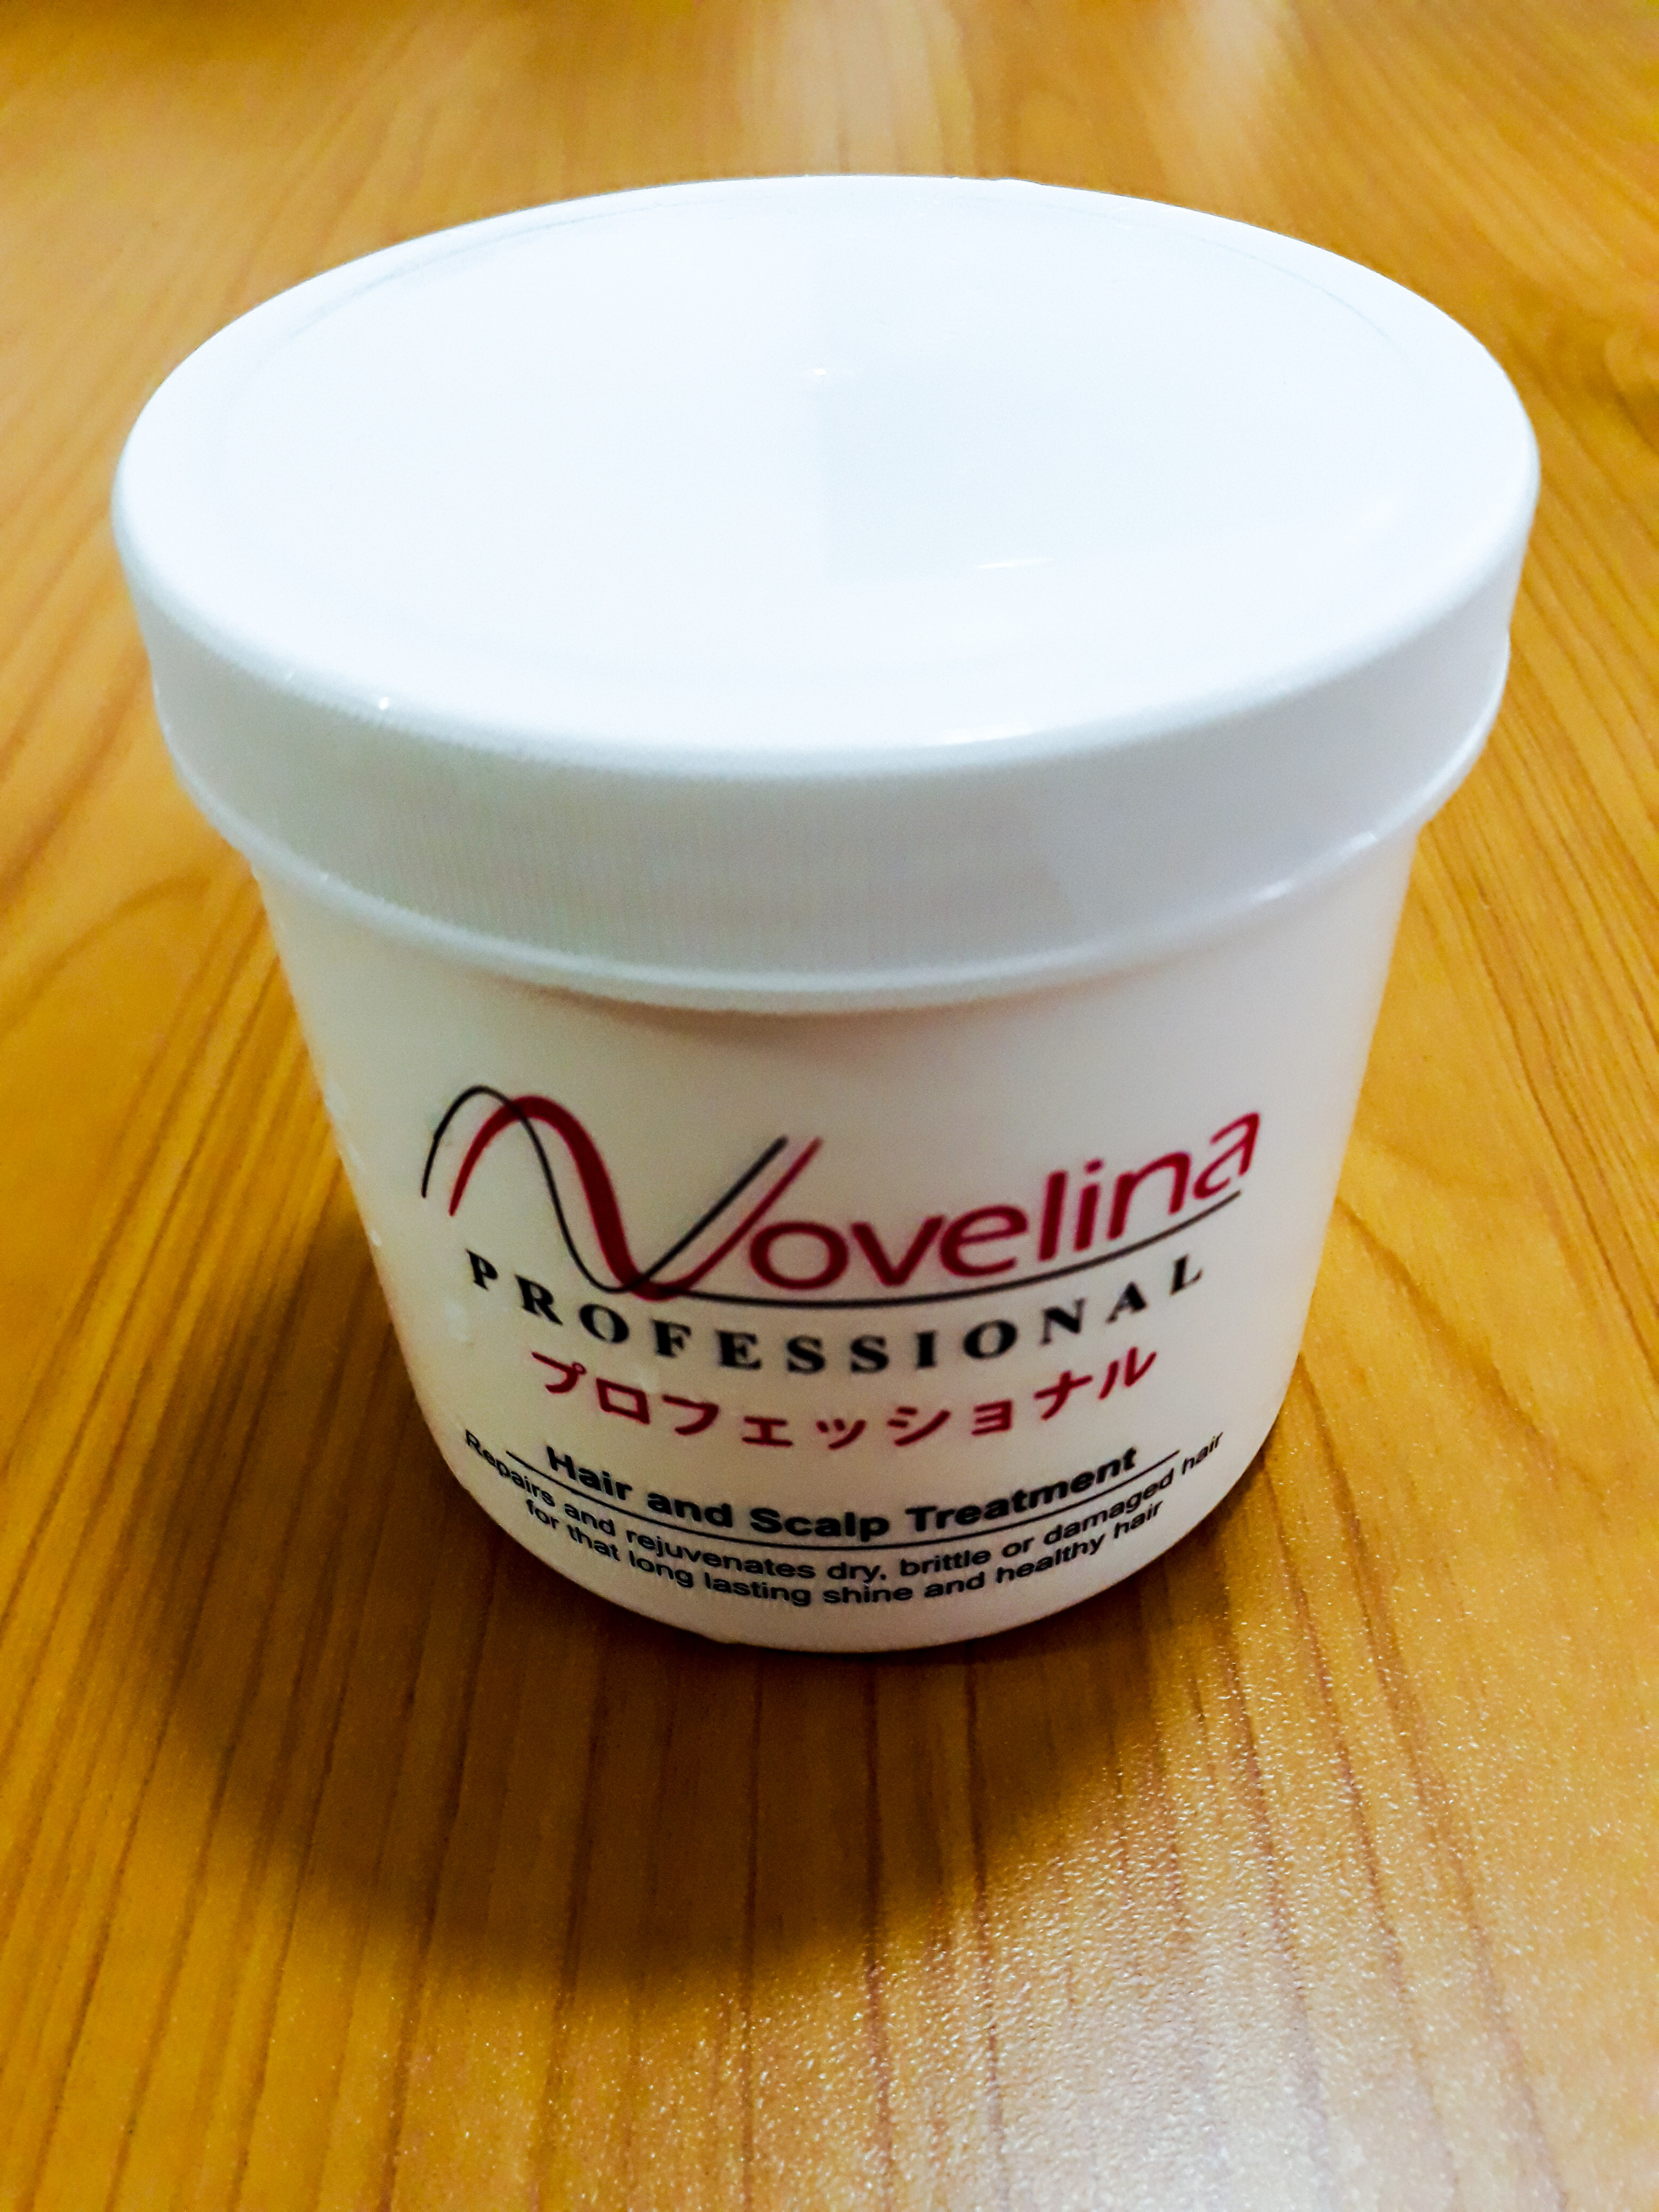 Novelina Hair and Scalp Treatment